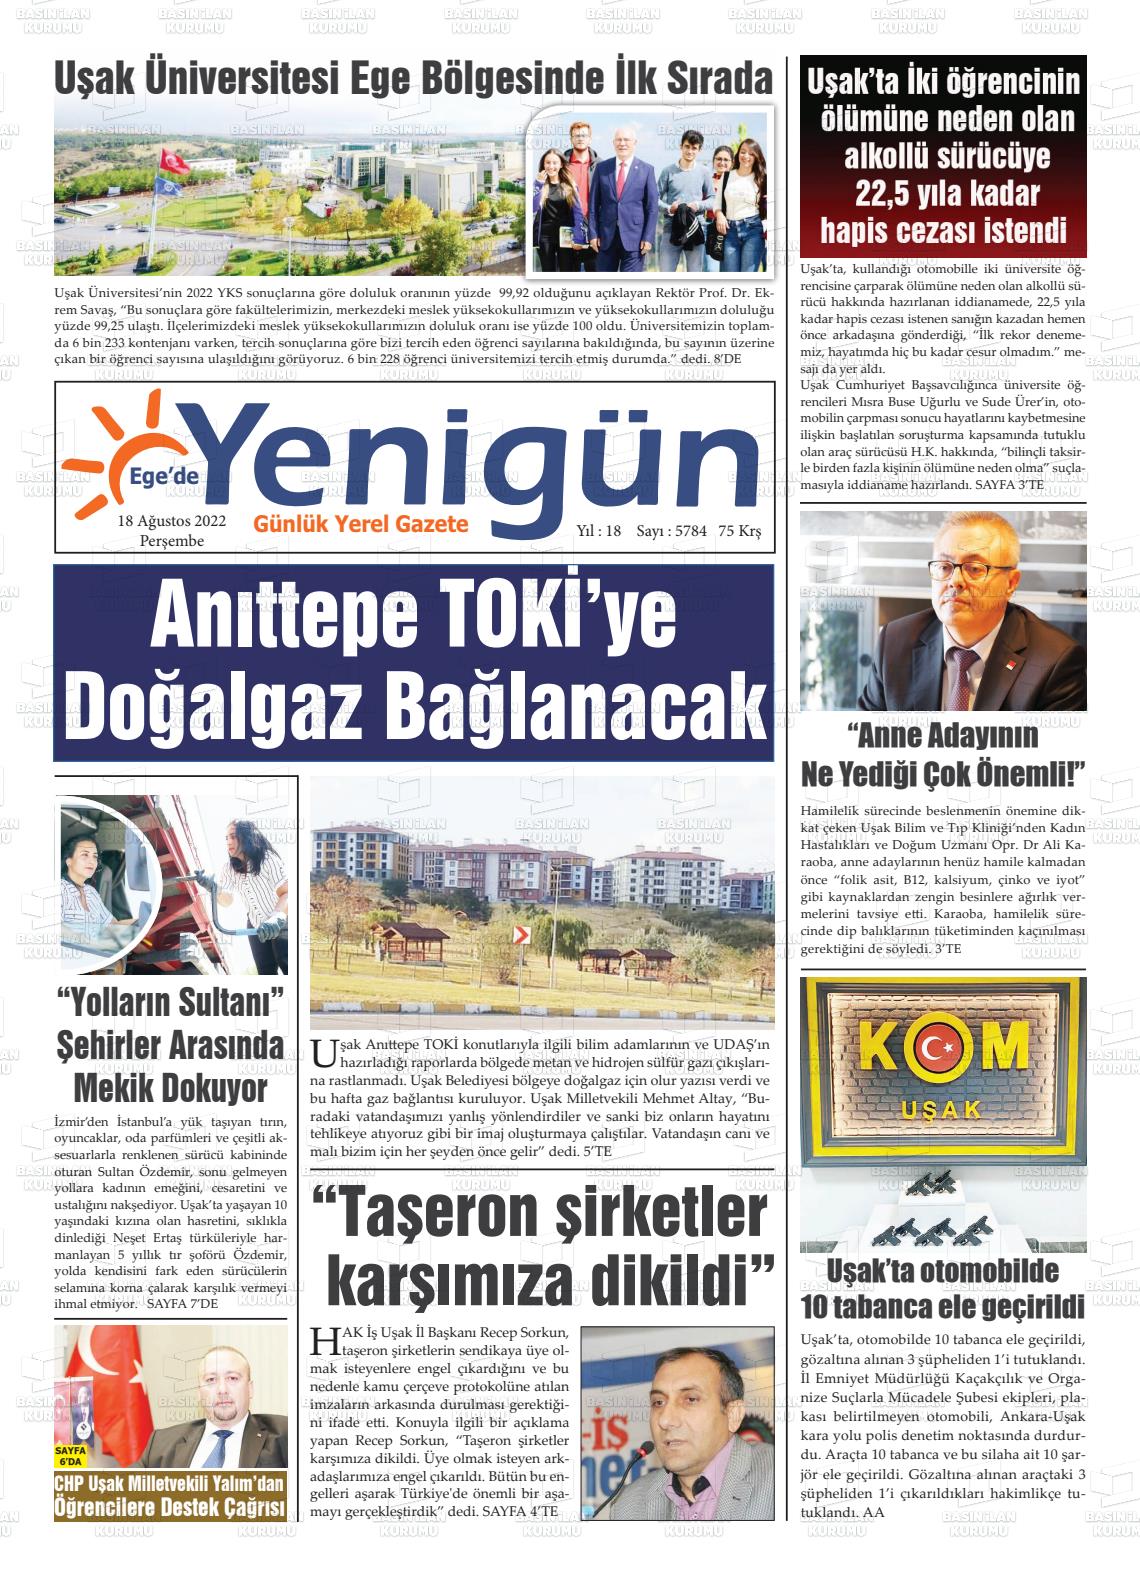 18 Ağustos 2022 EGE'DE YENİGÜN GAZETESİ Gazete Manşeti